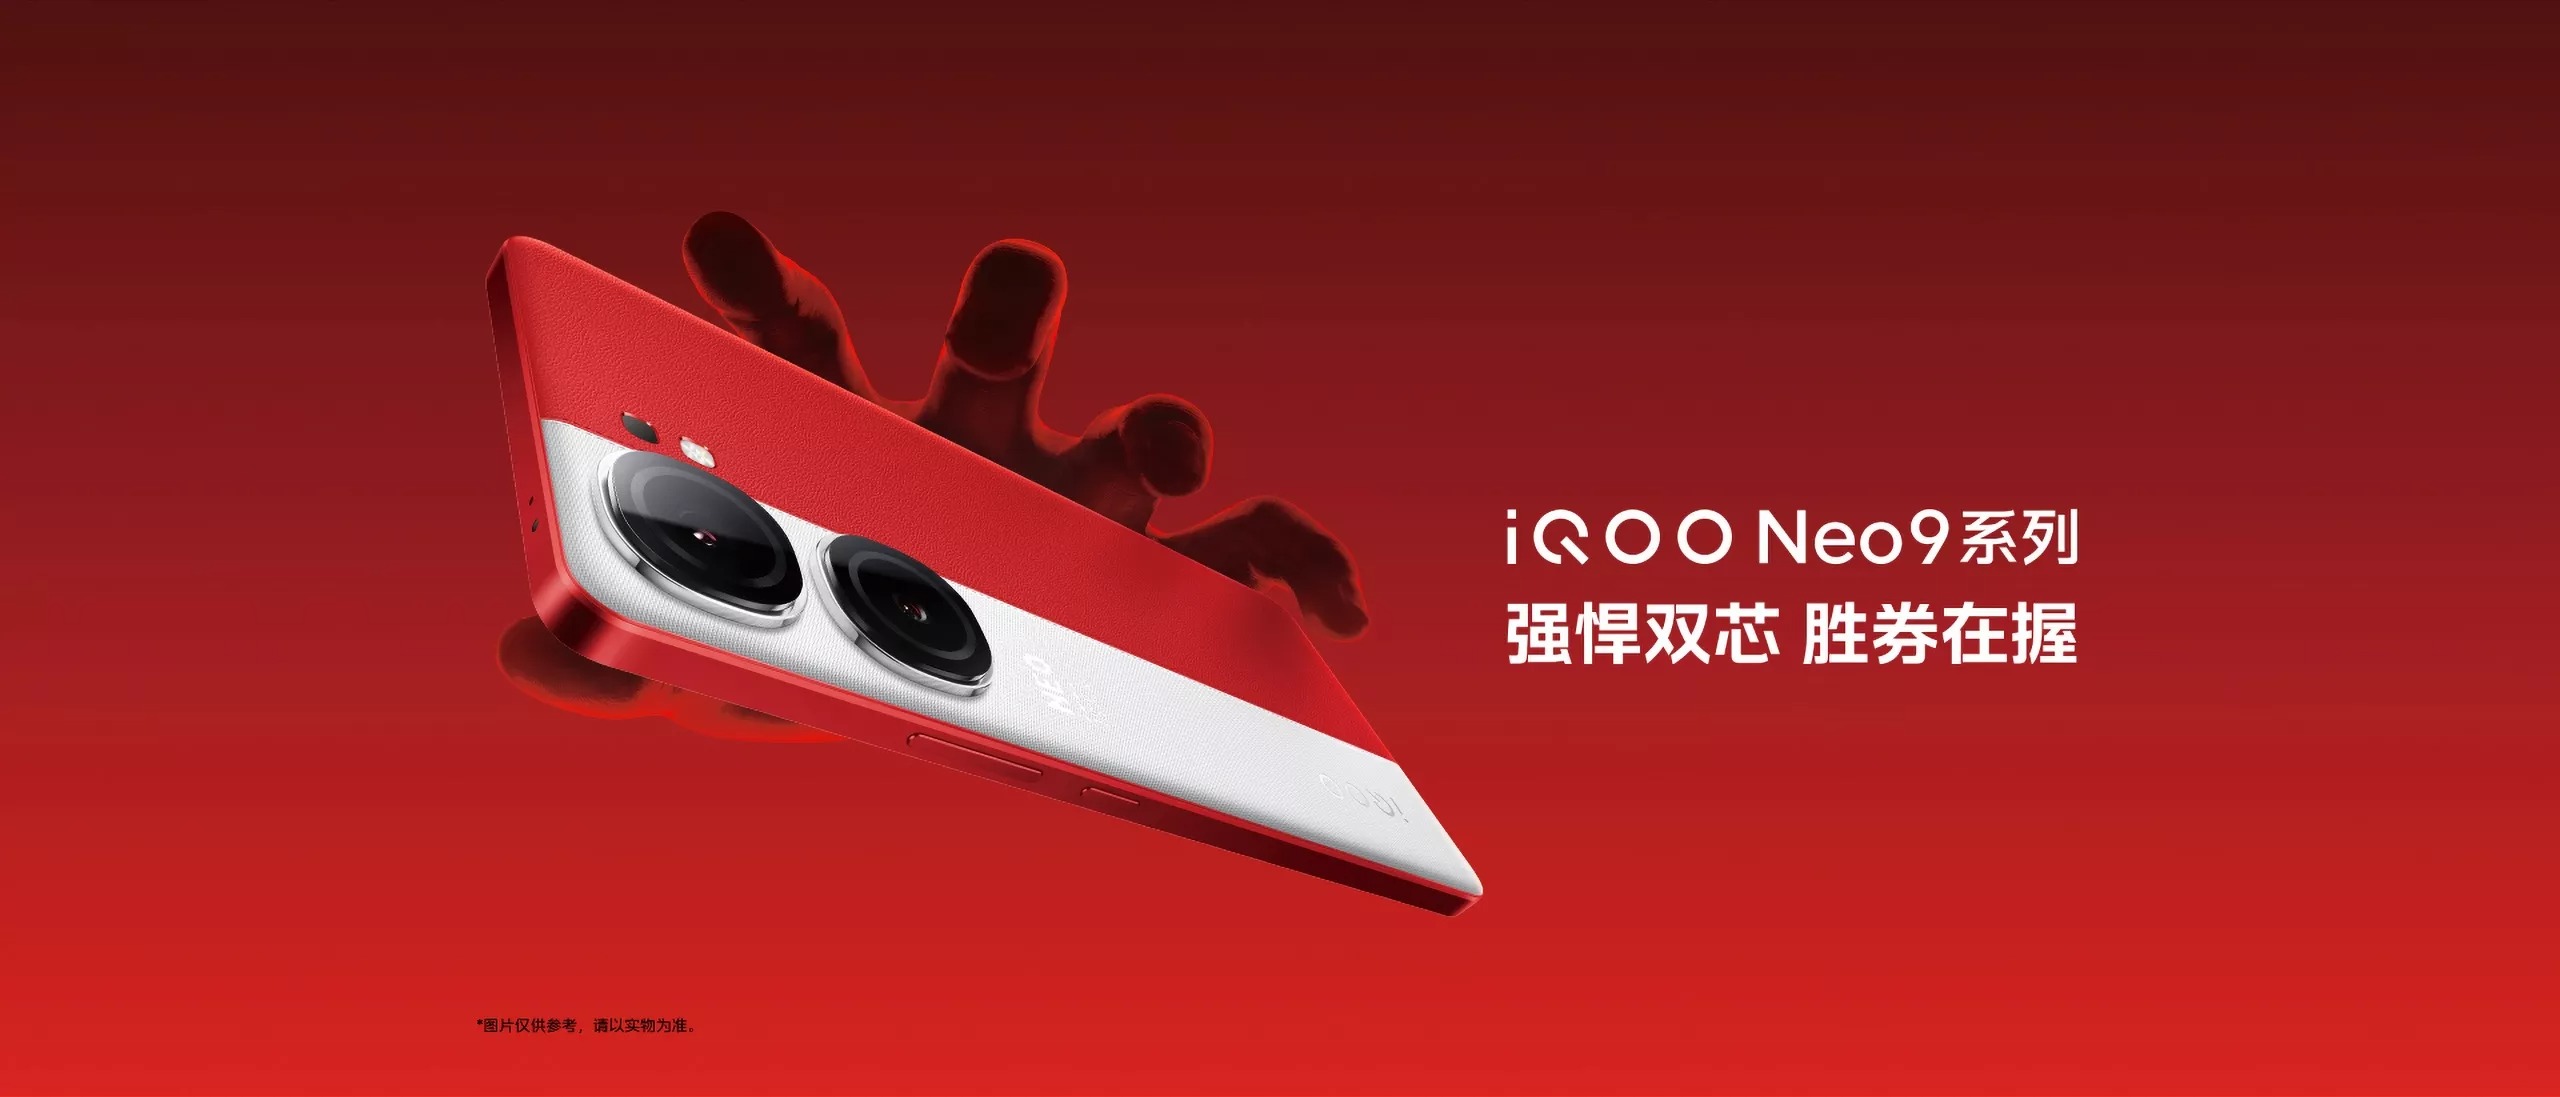 smartfon iQOO Neo 9 smartphone